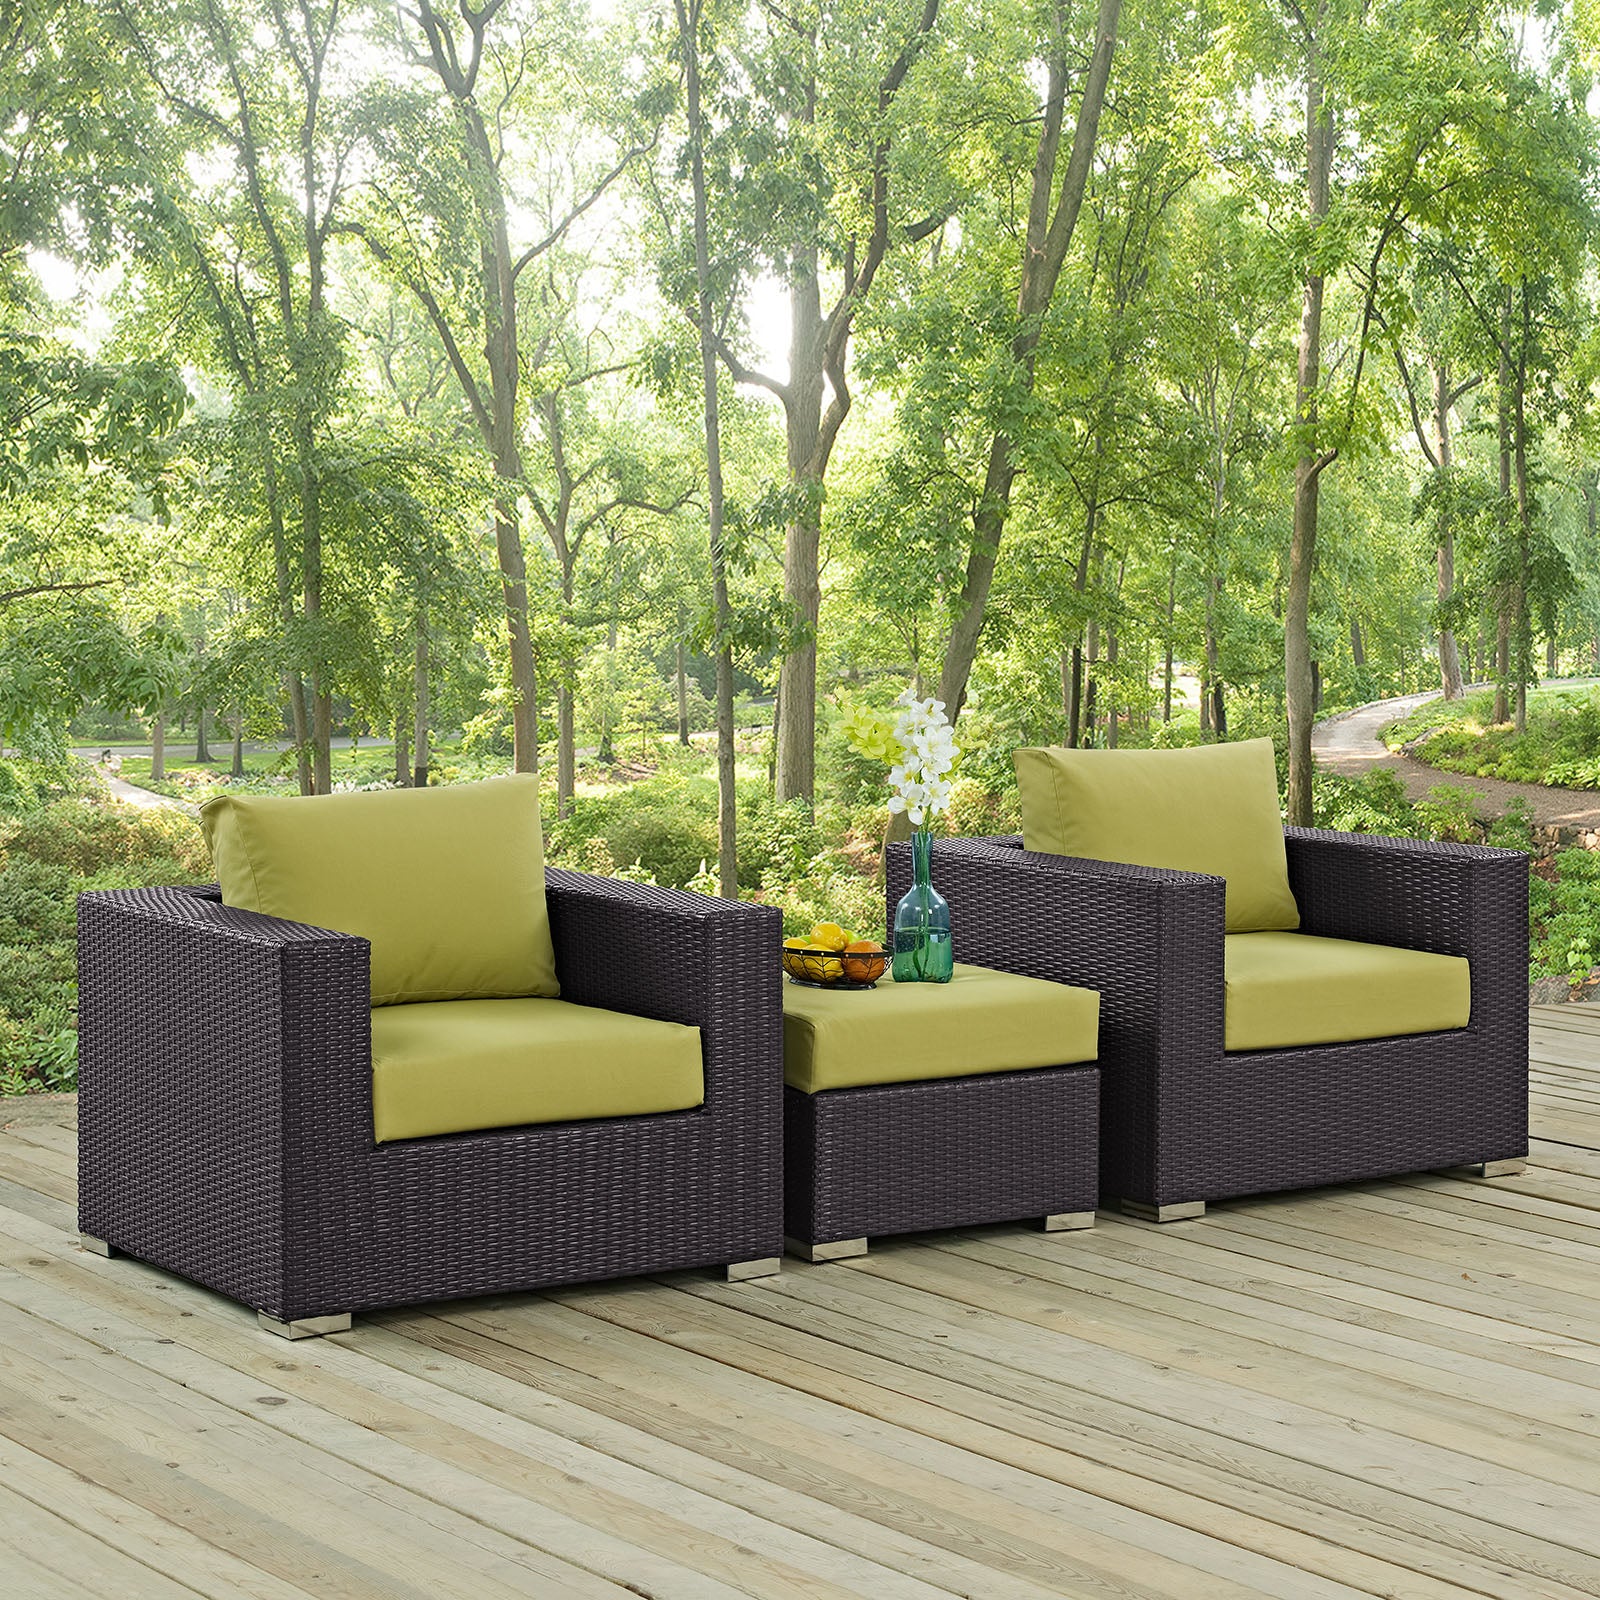 Modway Outdoor Conversation Sets - Convene 3 Piece Outdoor Patio Sofa Set Espresso & Peridot